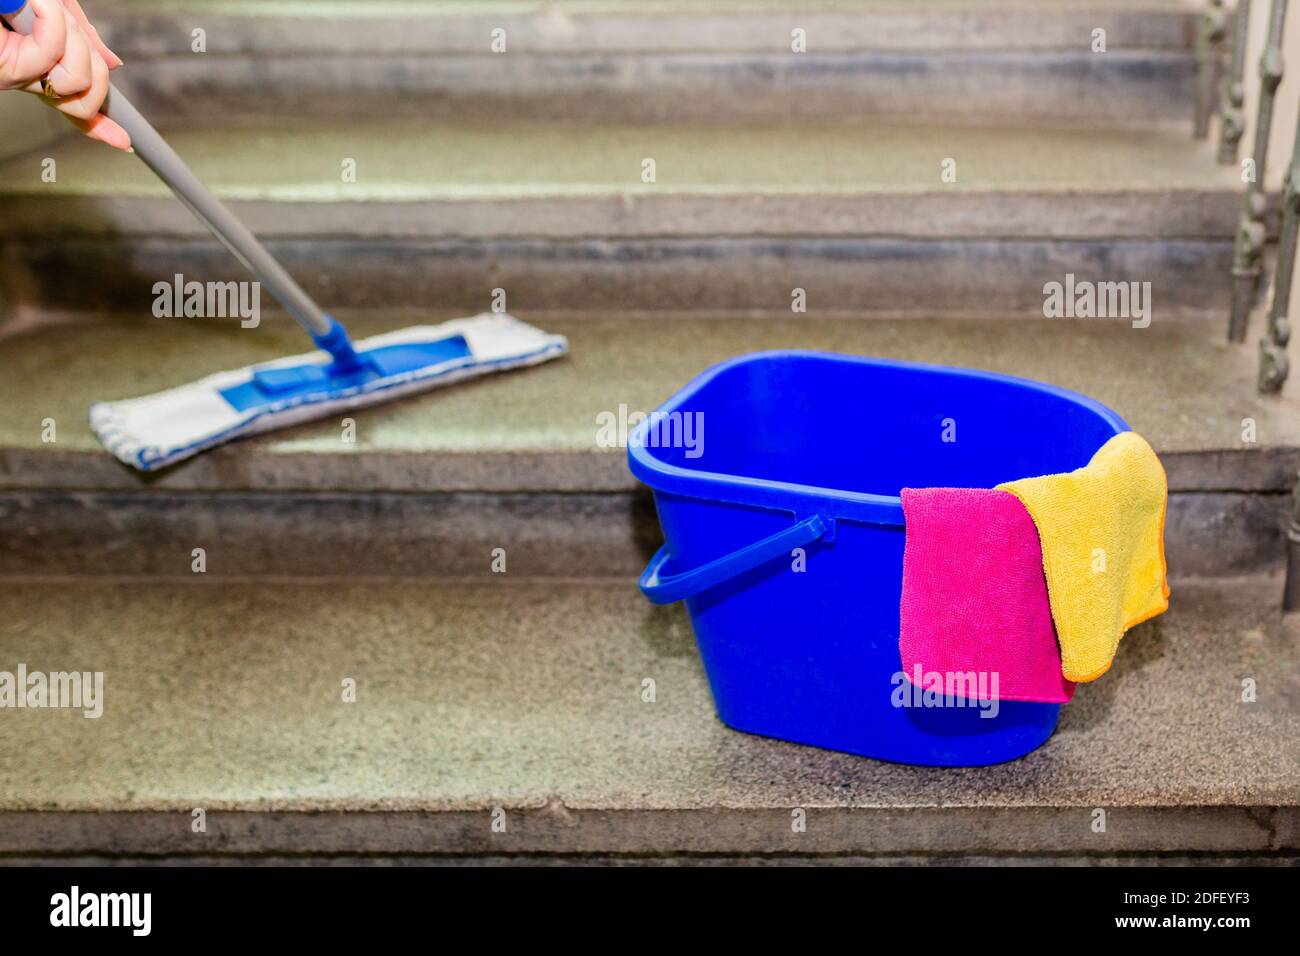 Reinigungsgeräte, ein blauer Kunststoffeimer mit gelbem und rosa Mikrofasertuch, auf grauen Granittreppen stehend. Eine Hand, die den Wischmopp hält, der die Treppe abwischt Stockfoto